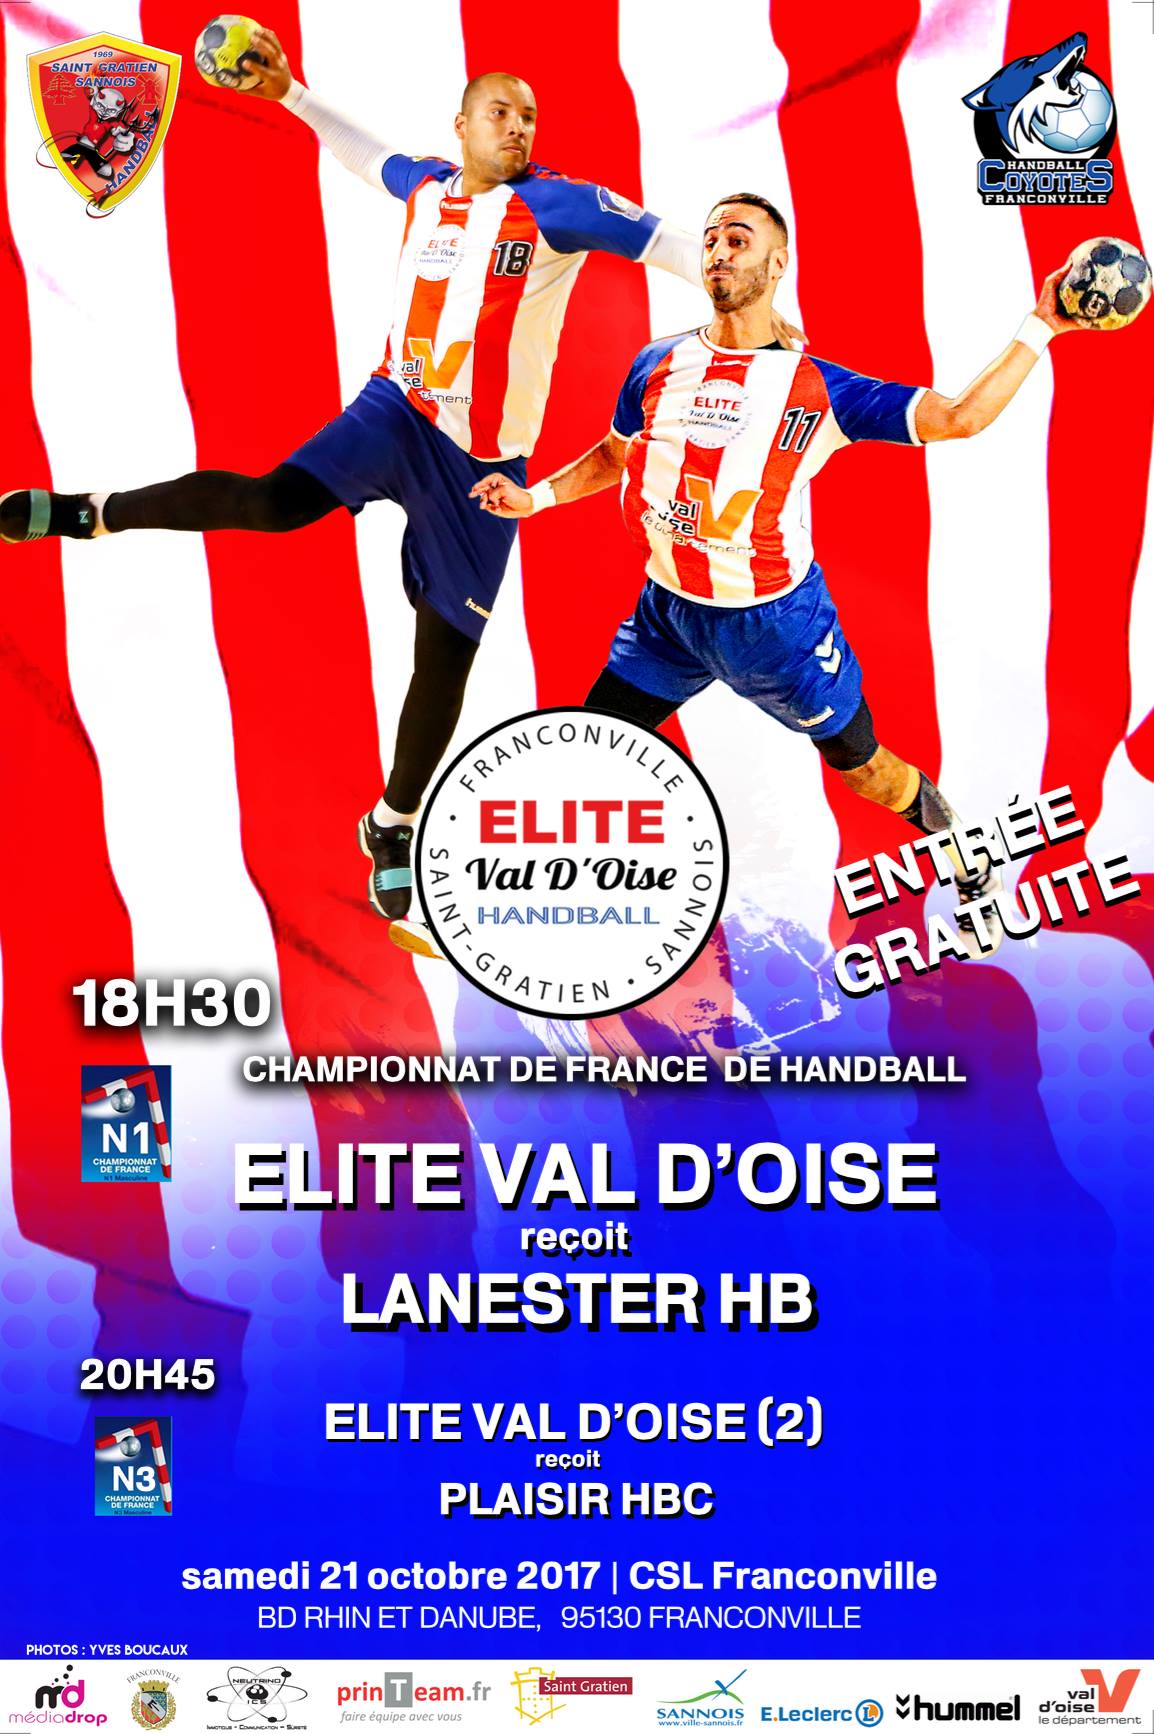 Elite Val d'Oise - Lanester